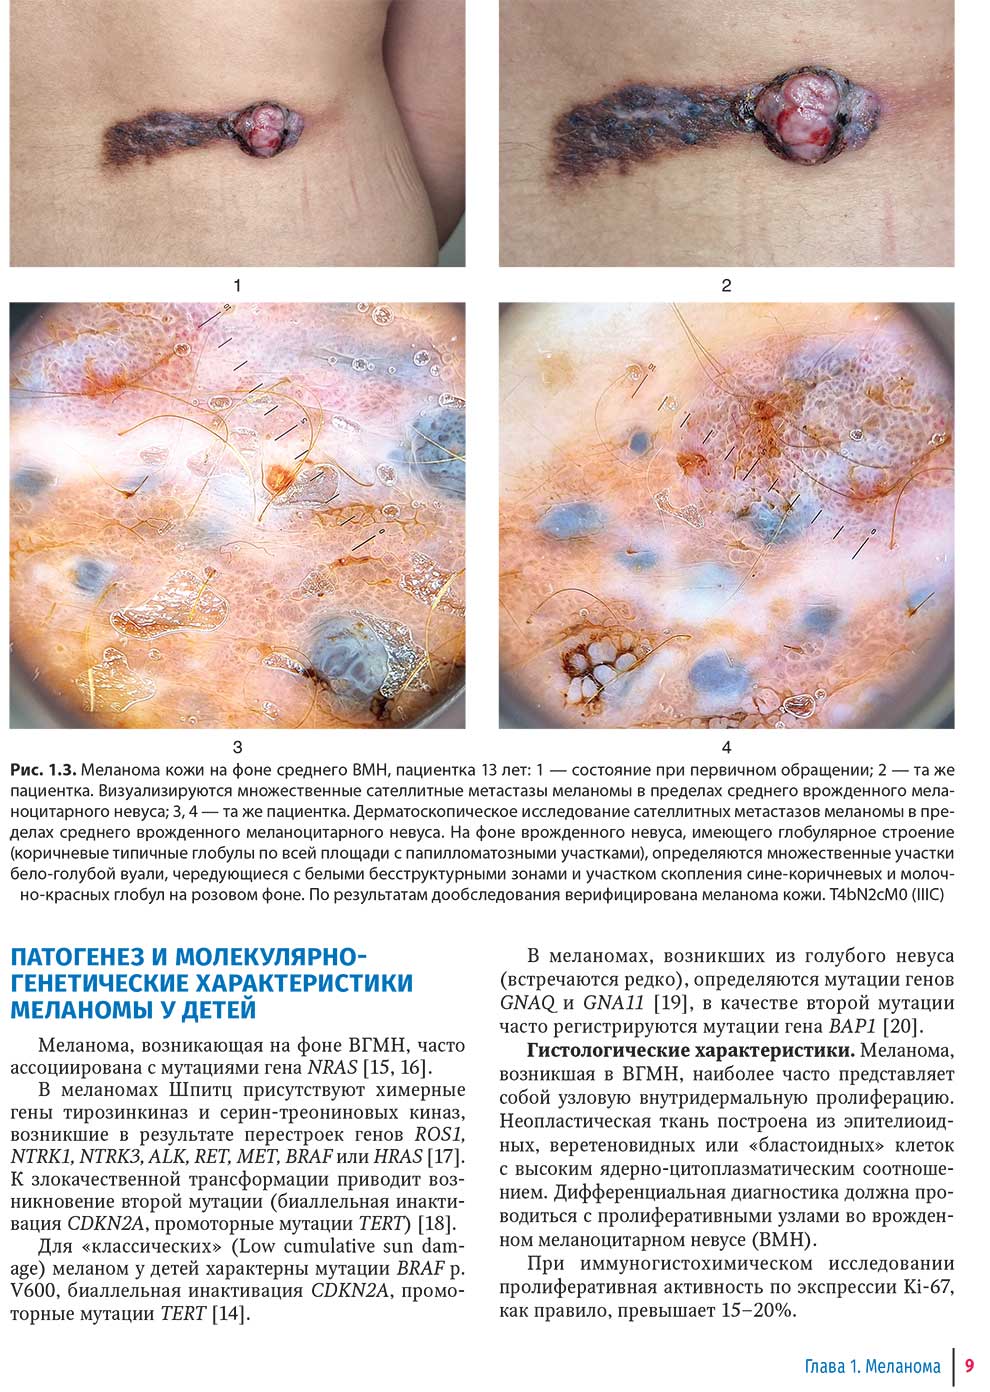 Меланома кожи на фоне среднего ВМН, пациентка 13 лет